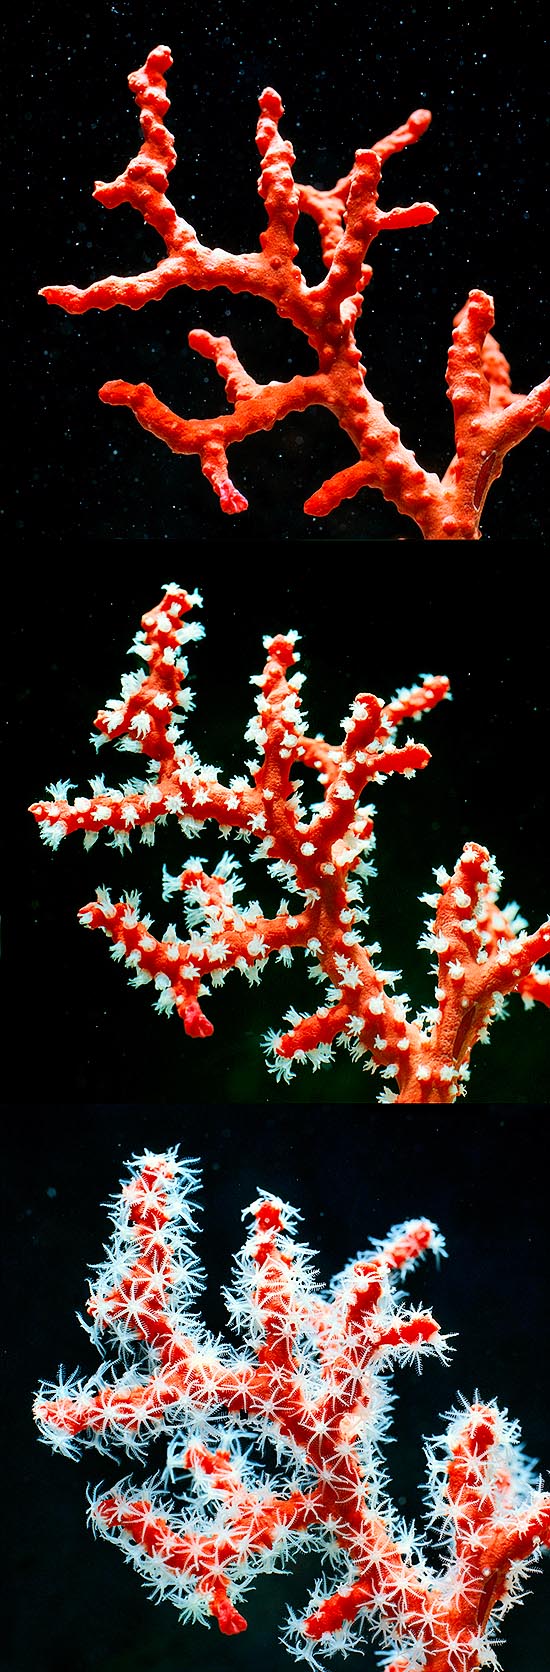 Corallium rubrum, Corallo rosso, Anthozoa